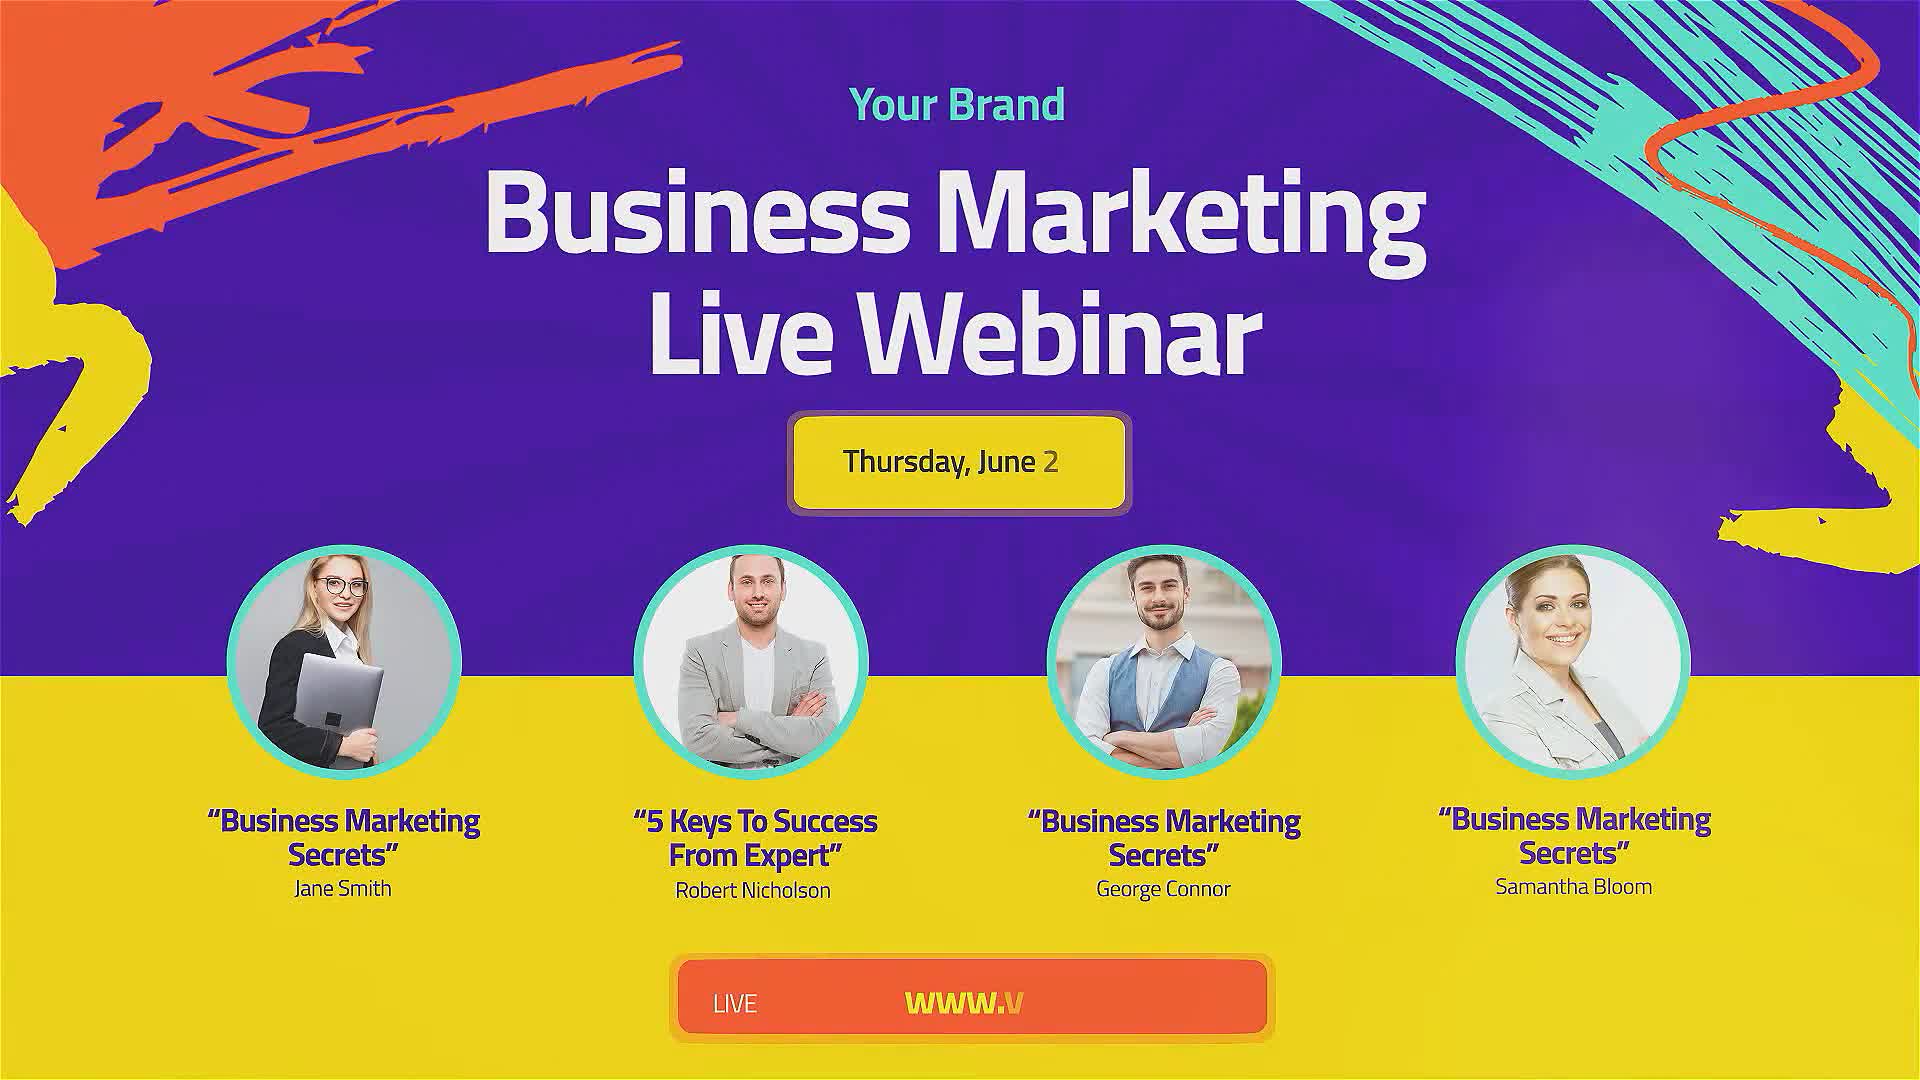  Live Webinar. Business Event Promo 